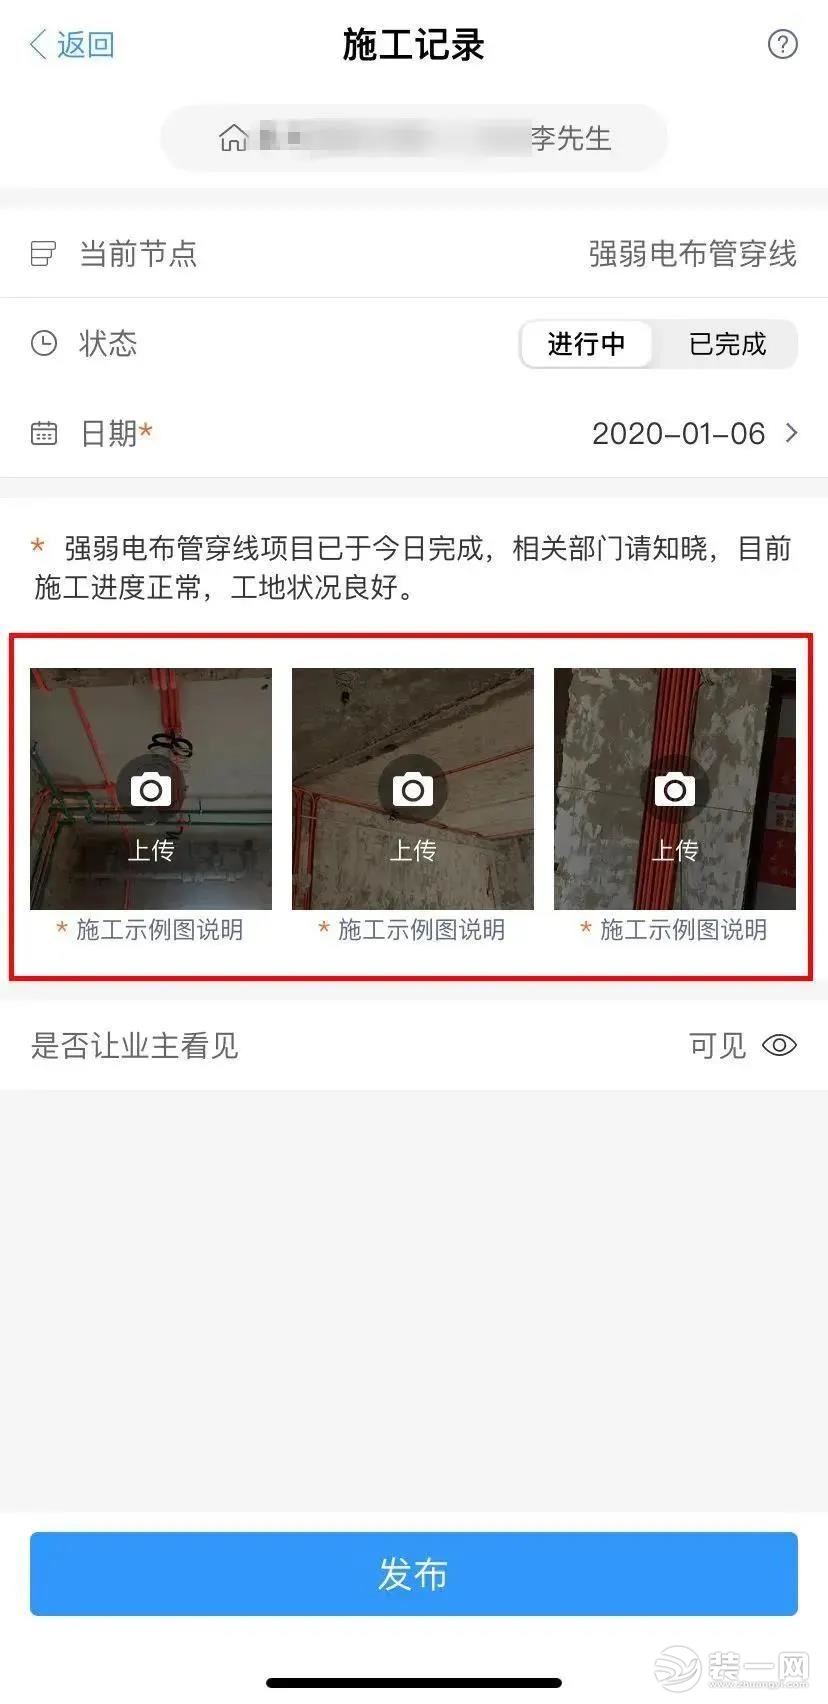 重庆东易日盛360°天眼系统 足不出户实现远程在线监工